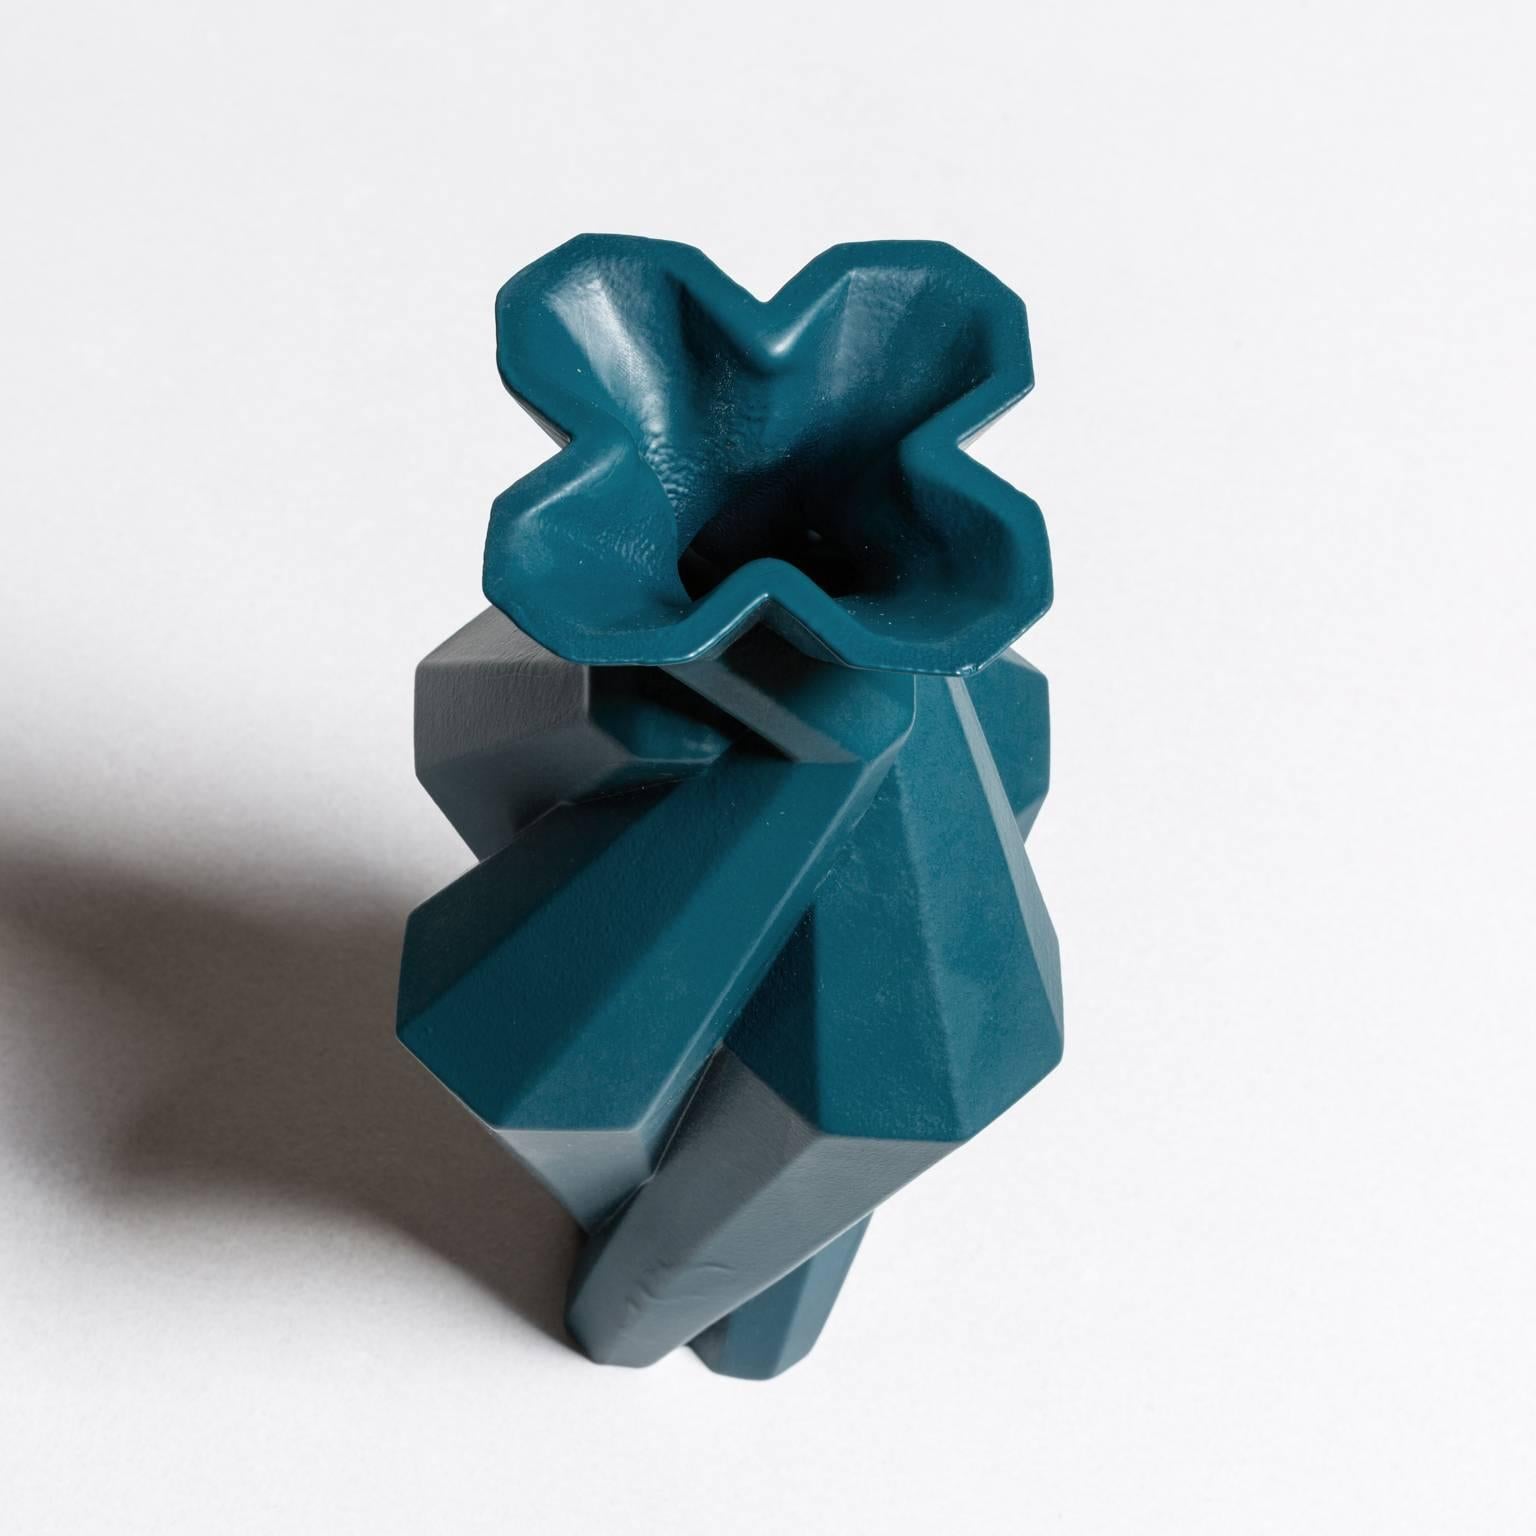 Modern Fortress Spire Vase in Blue Ceramic by Lara Bohinc, in Stock